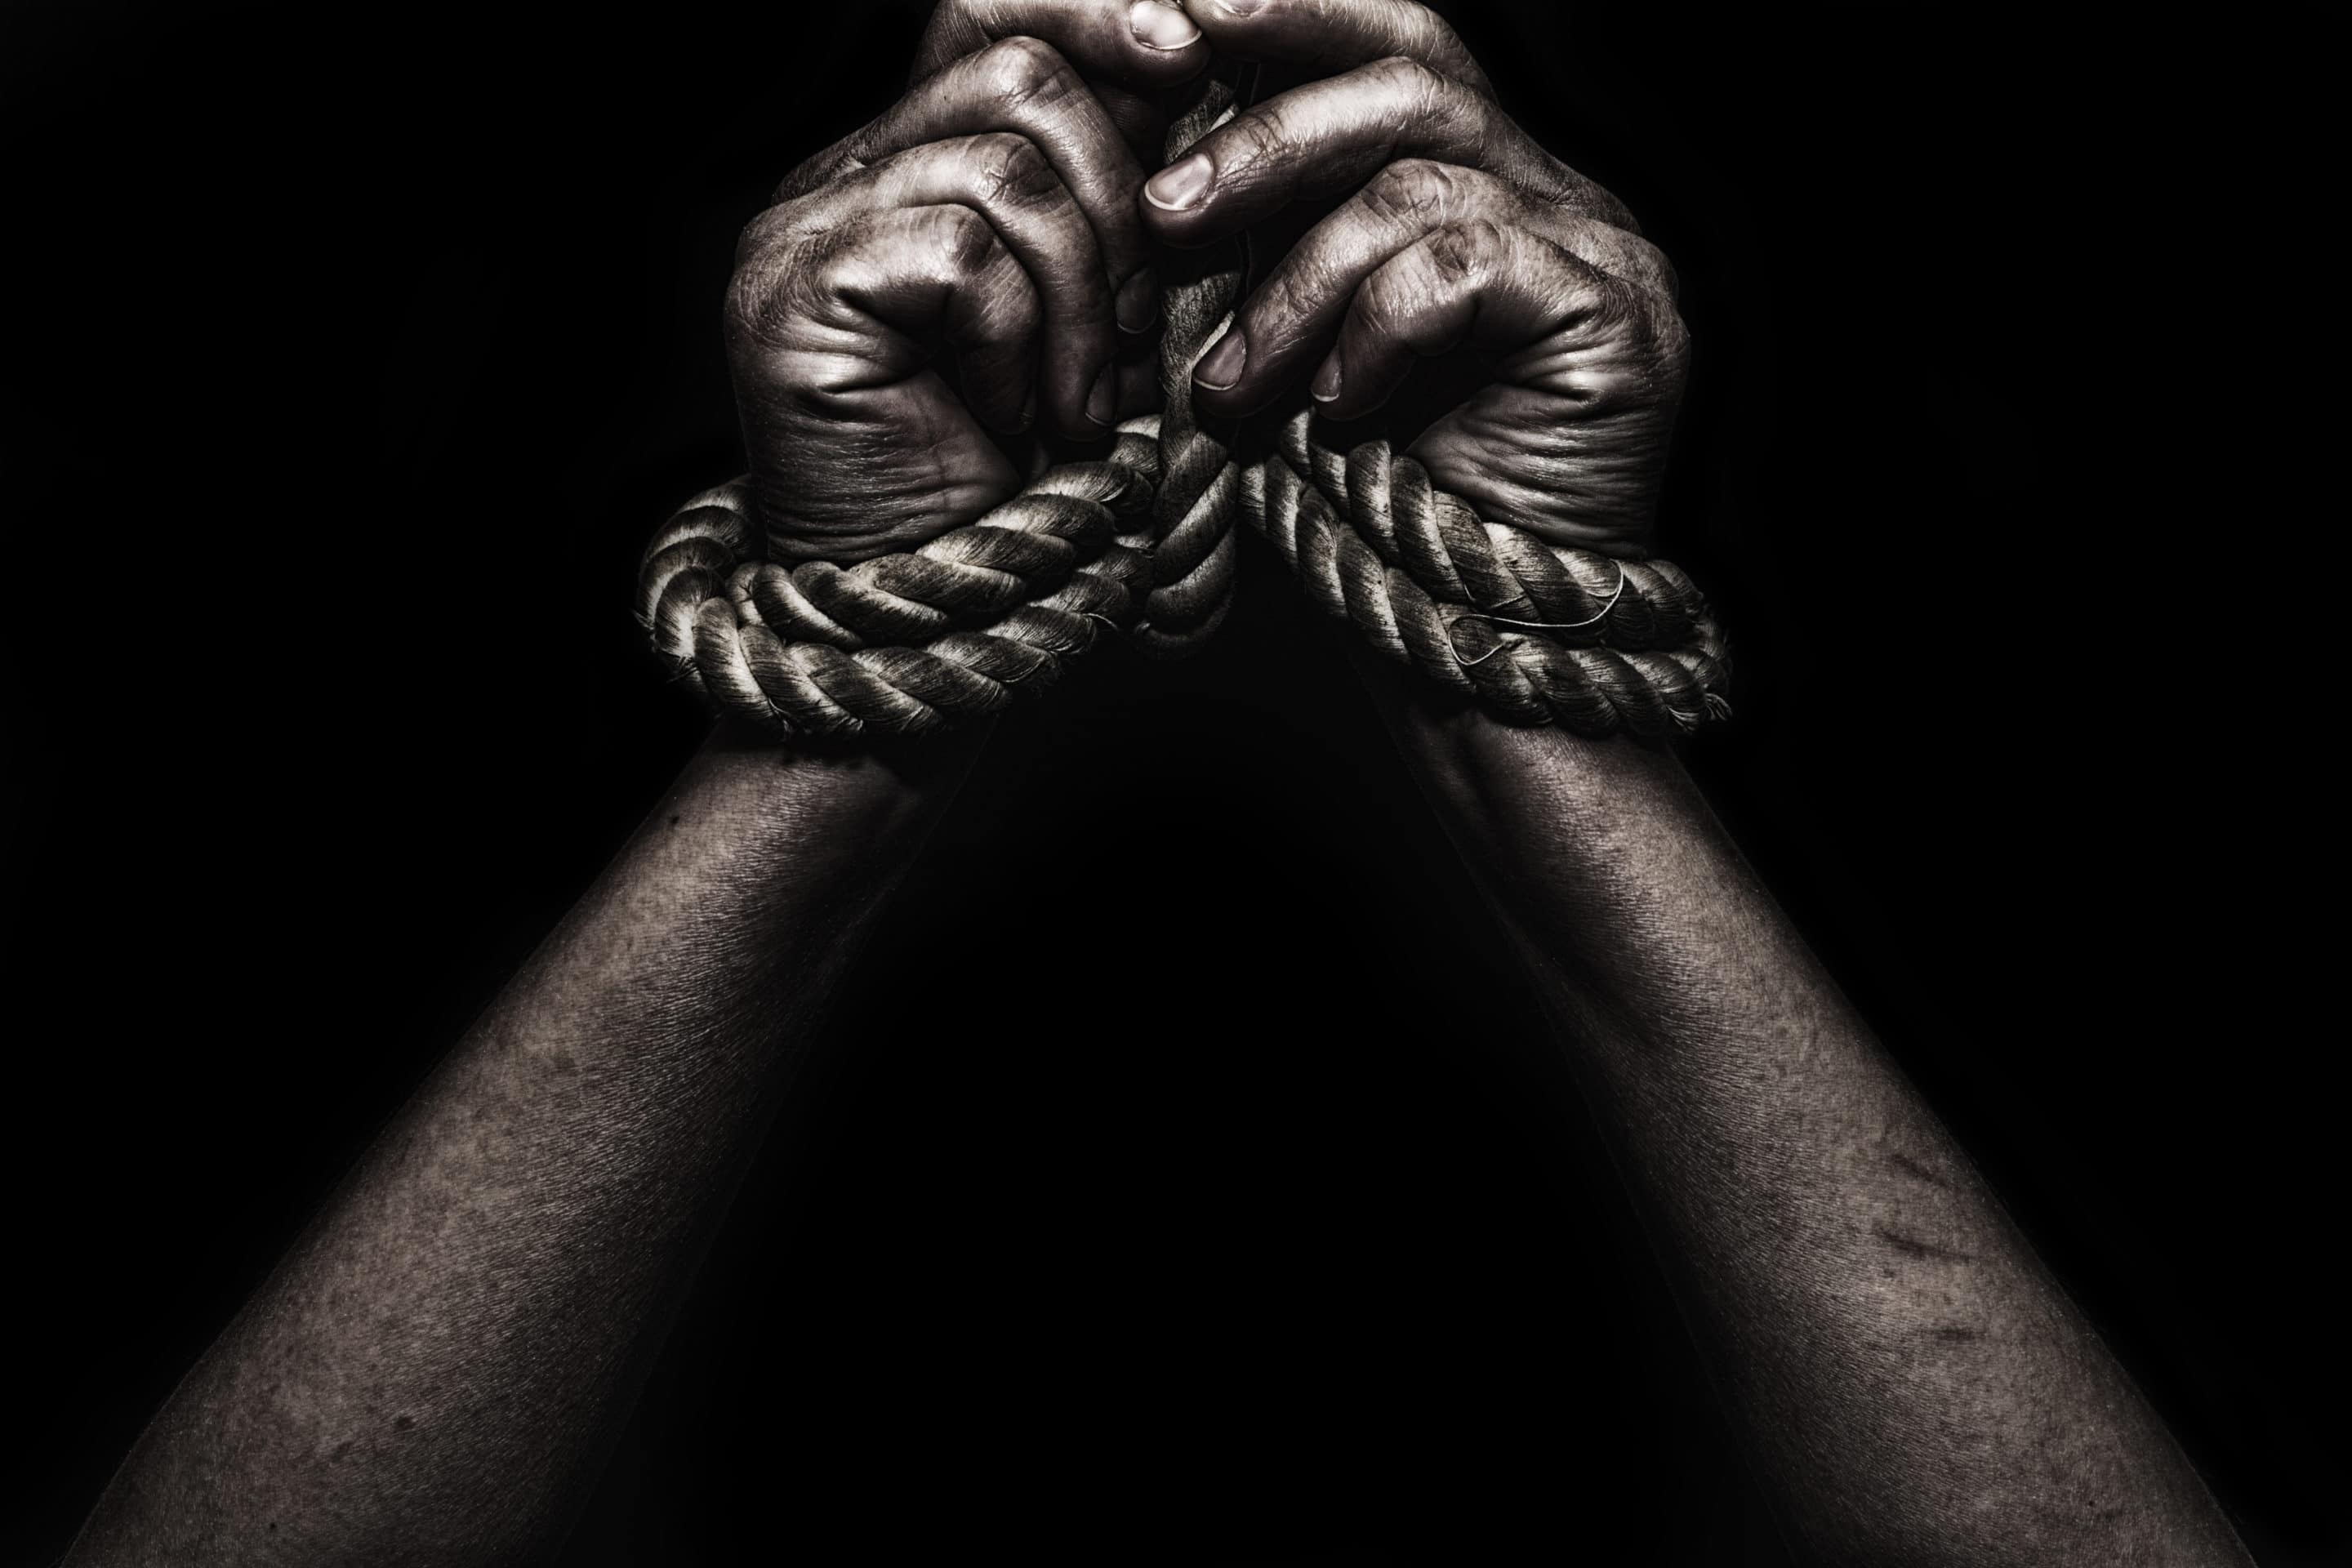 Trafic d’êtres humains en Libye : quand l’Union européenne encourage l’esclavage!